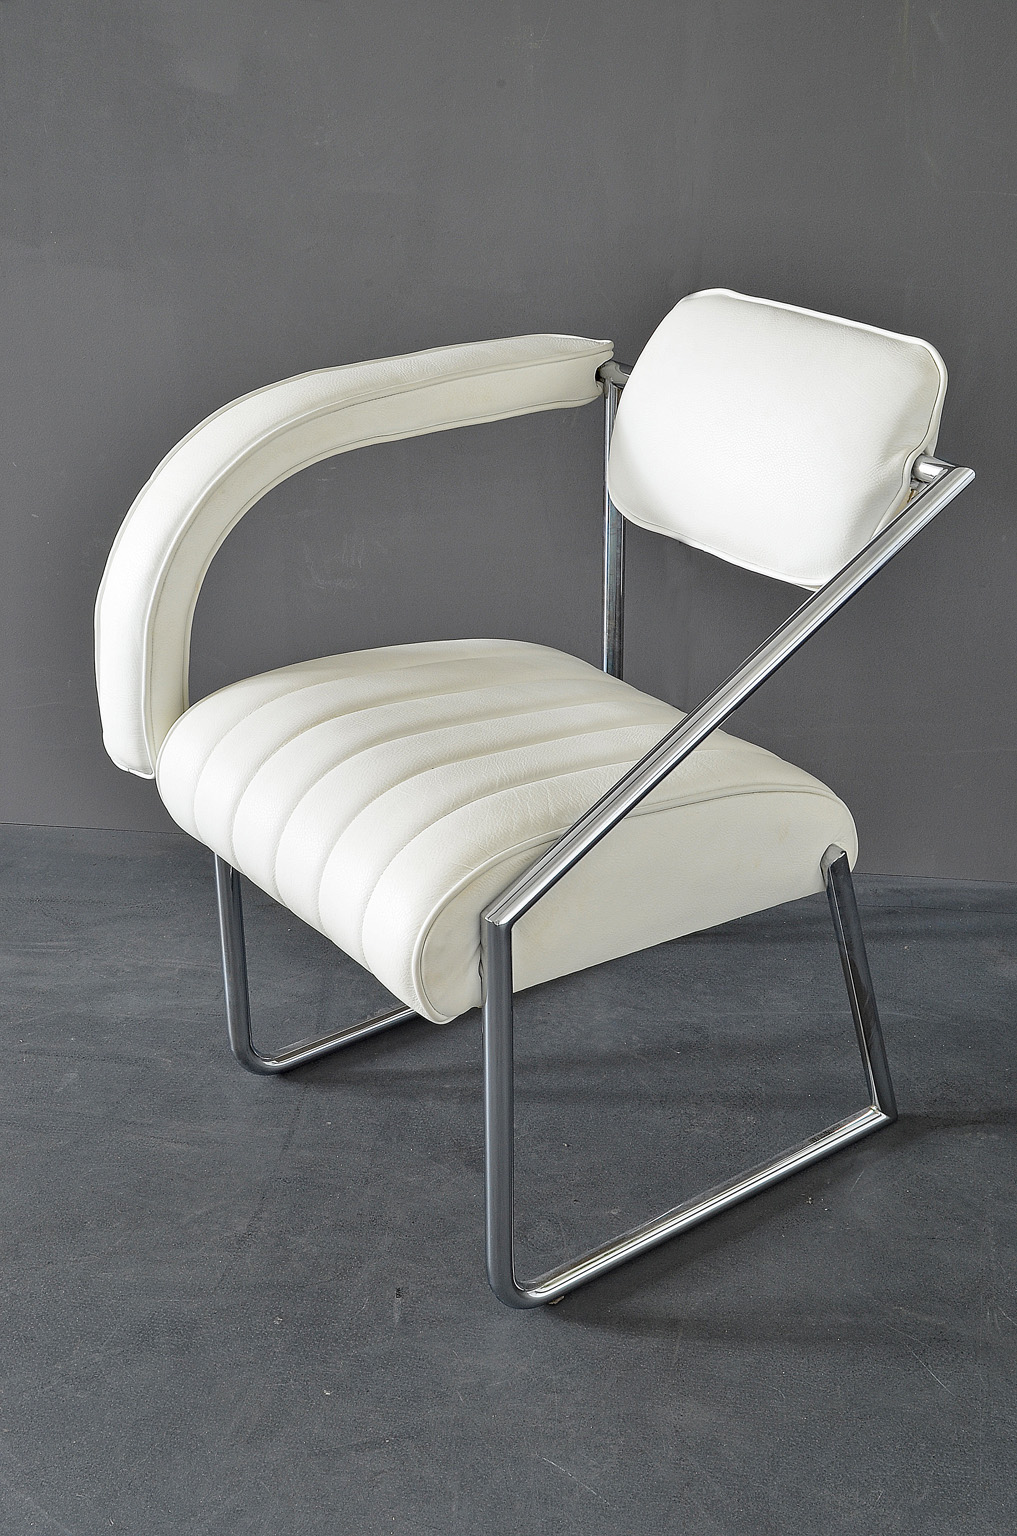 Easy Chair designed by Eileen Gray “Non Conformist”, 1926. Vereinigte Werkstätten Munich, 1970s